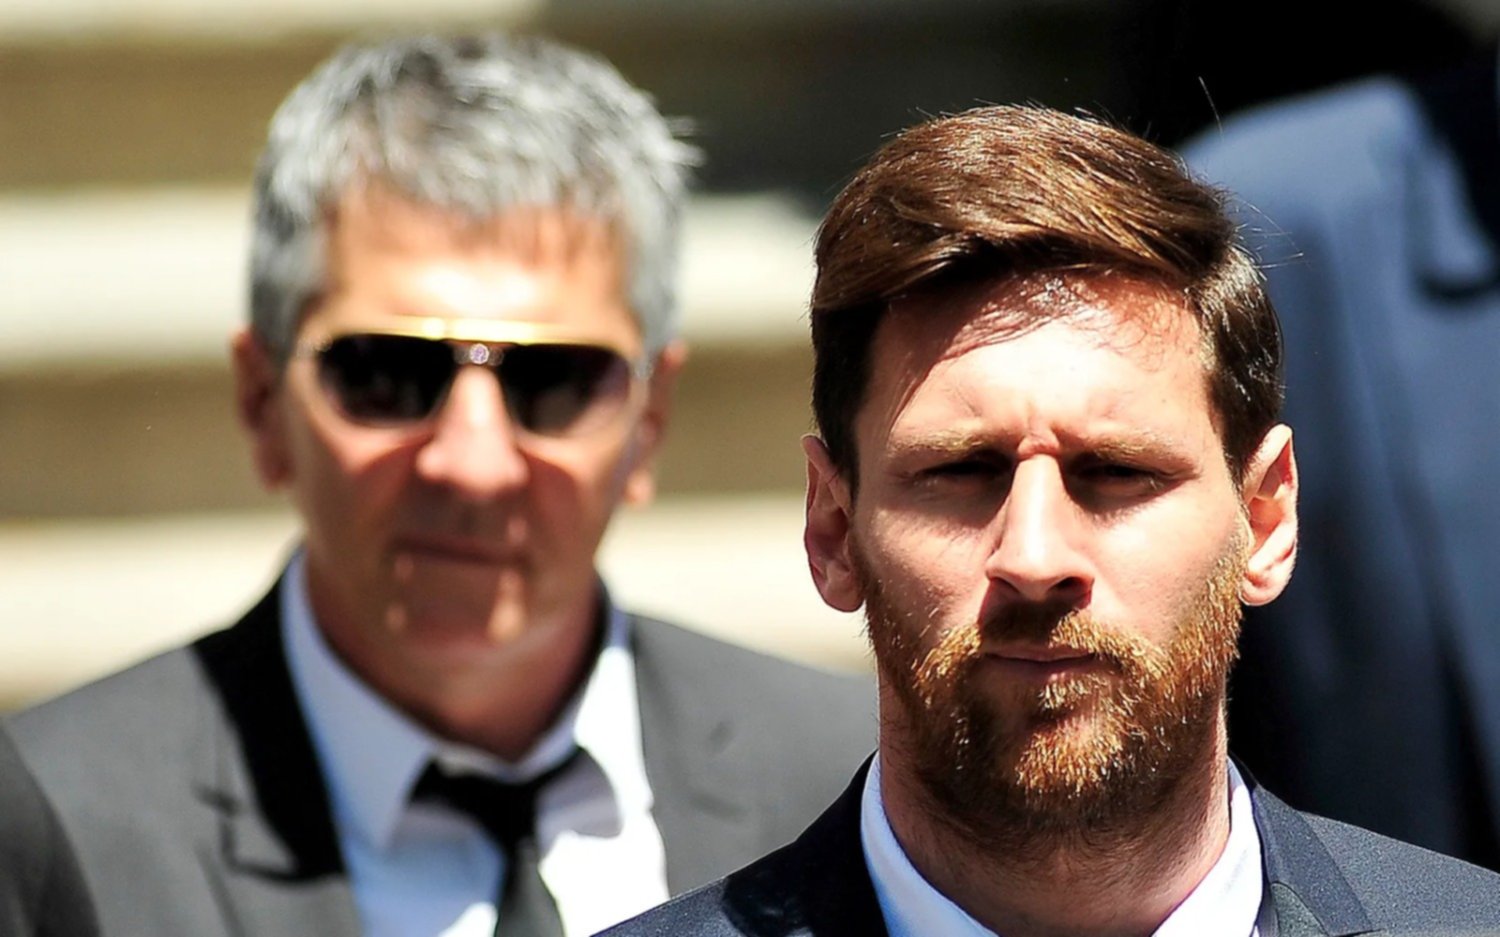 El padre de Messi, furioso en redes sociales sobre el futuro de su hijo: "No vamos a tolerar mas inventos"